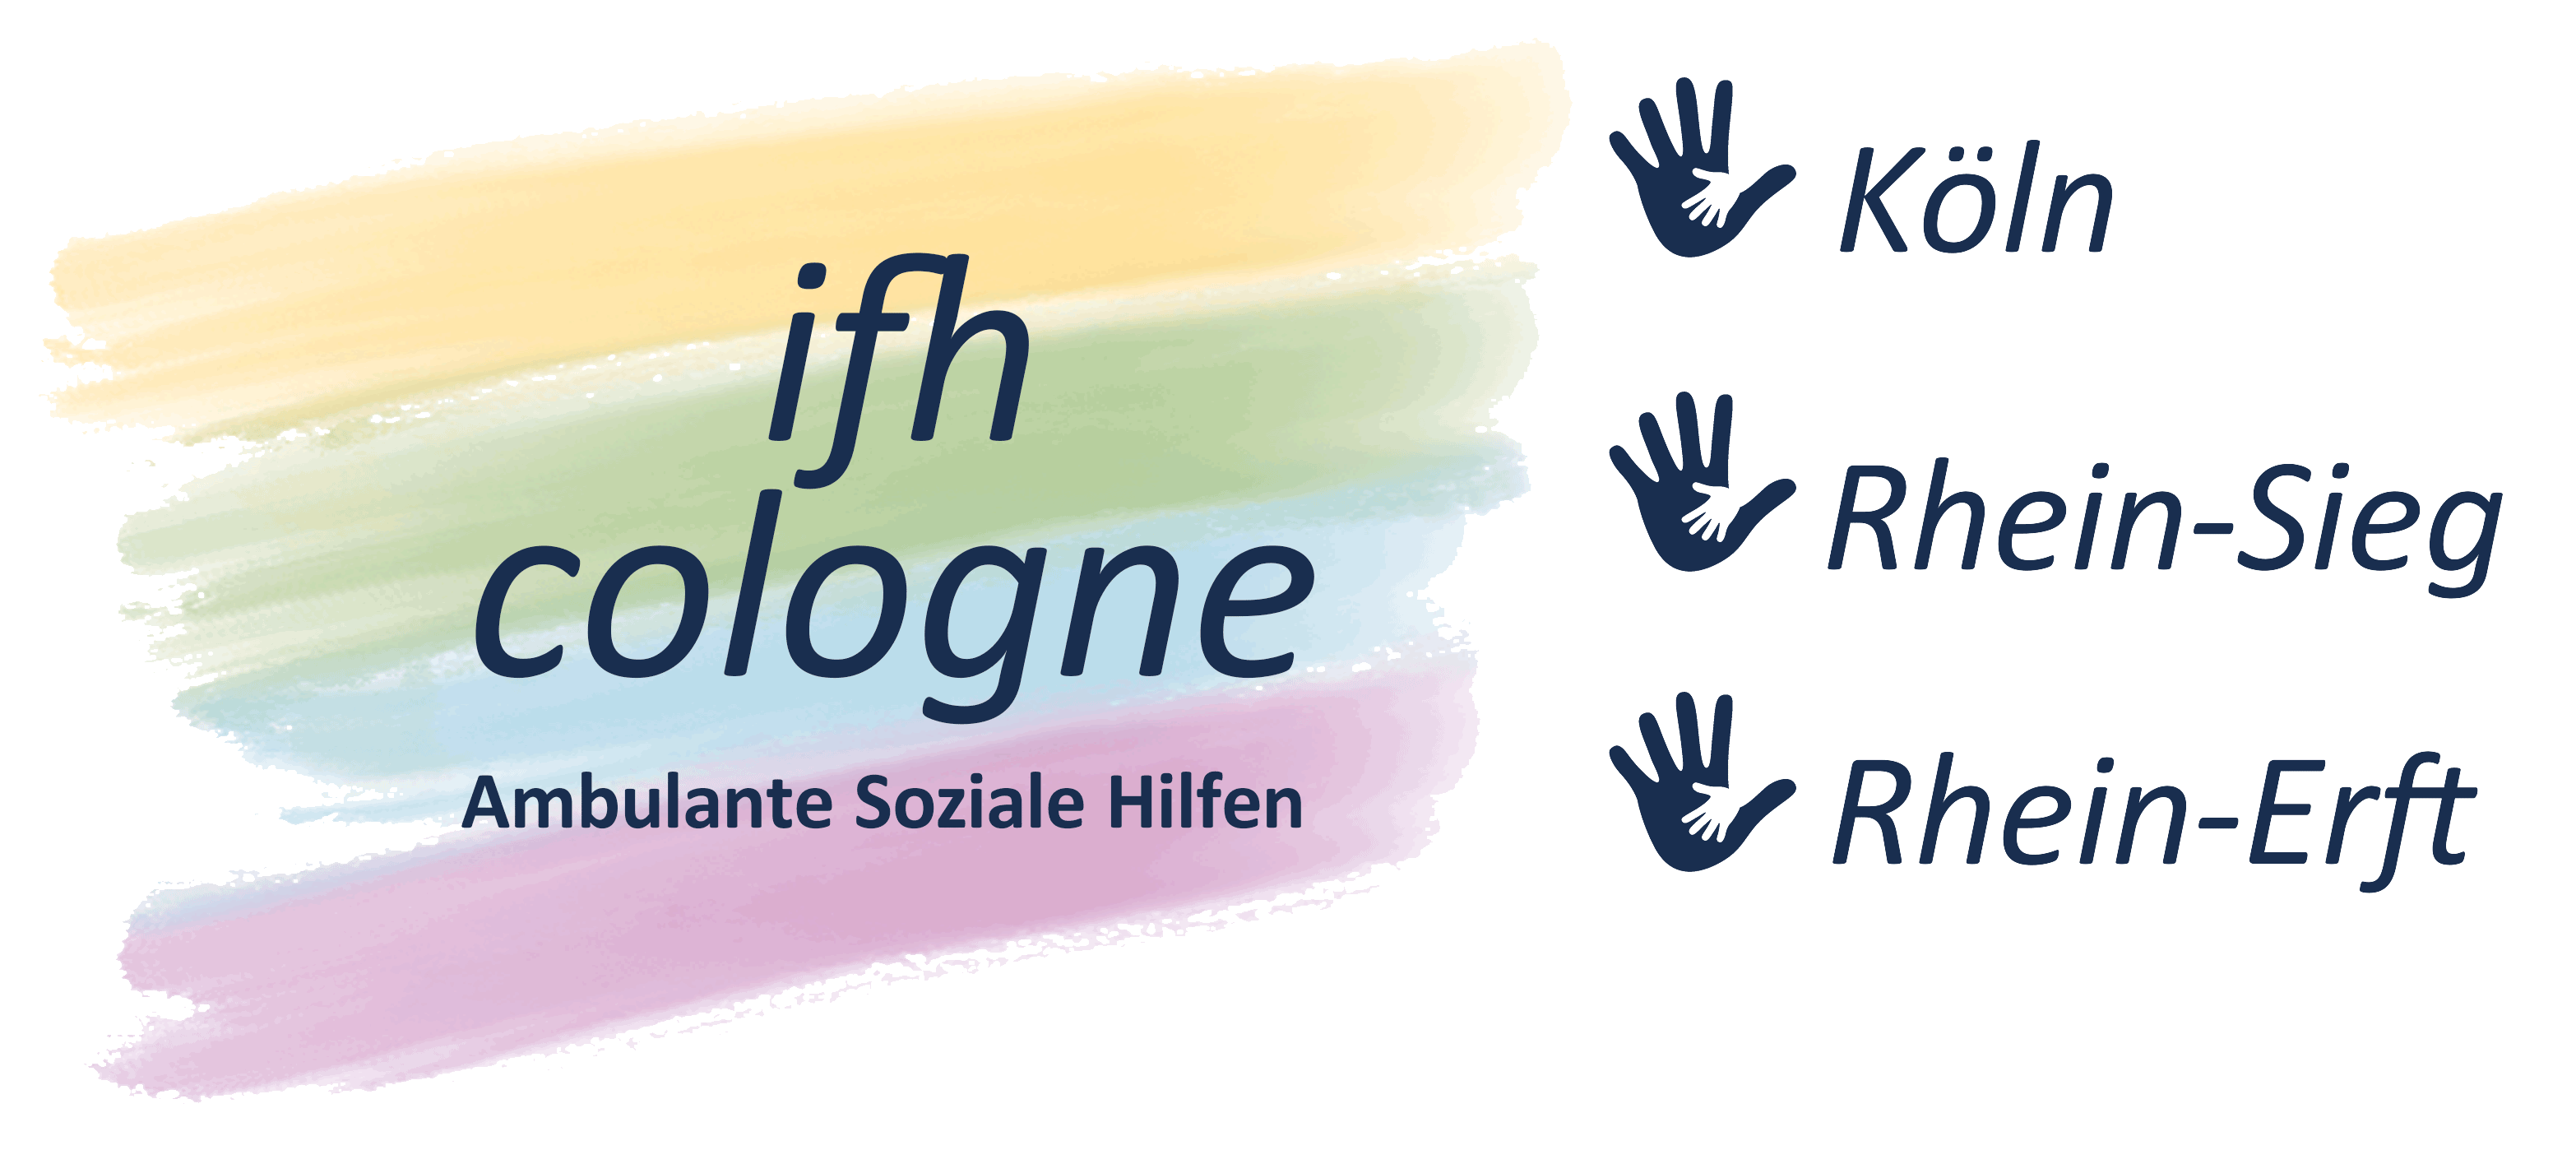 IFH Cologne - Ambulante Soziale Hilfen